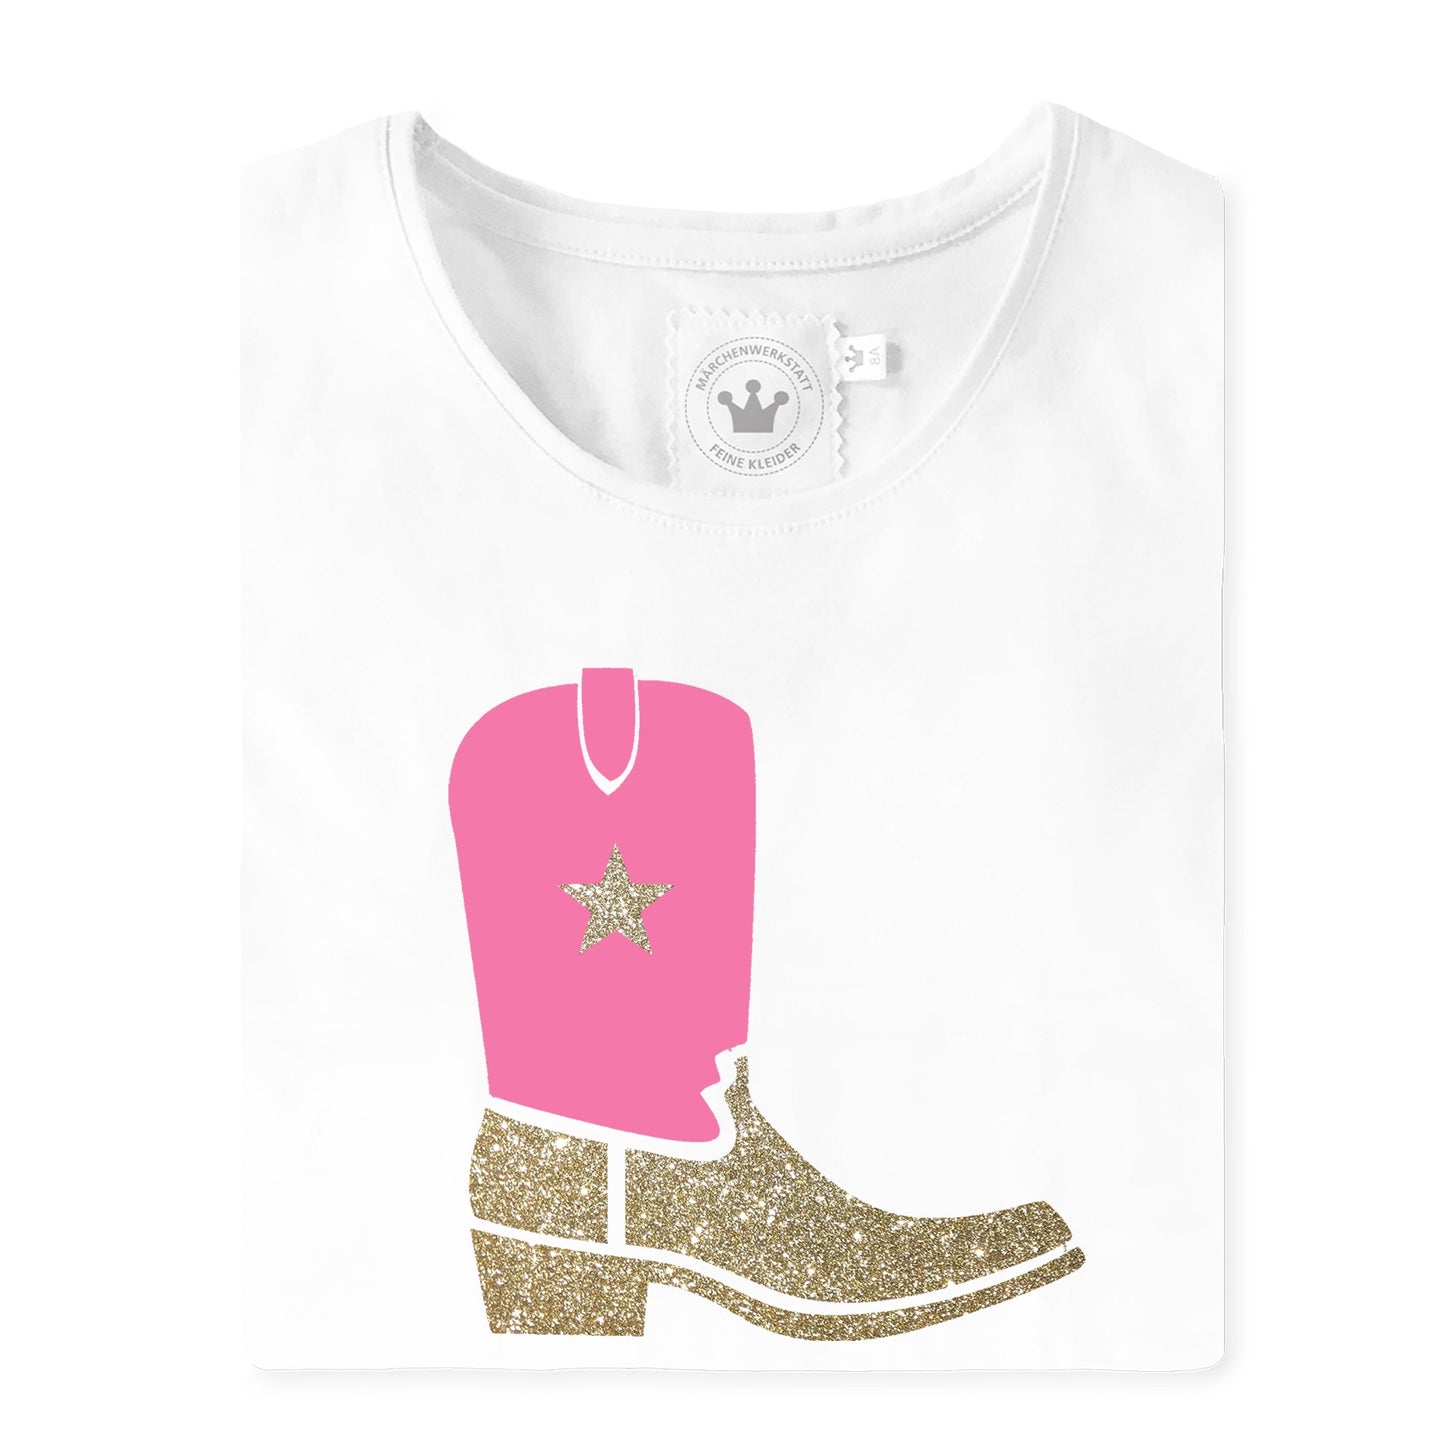 rosa CowboyT-Shirt mit Stiefel aus Samt/Glitzer und gold Stern